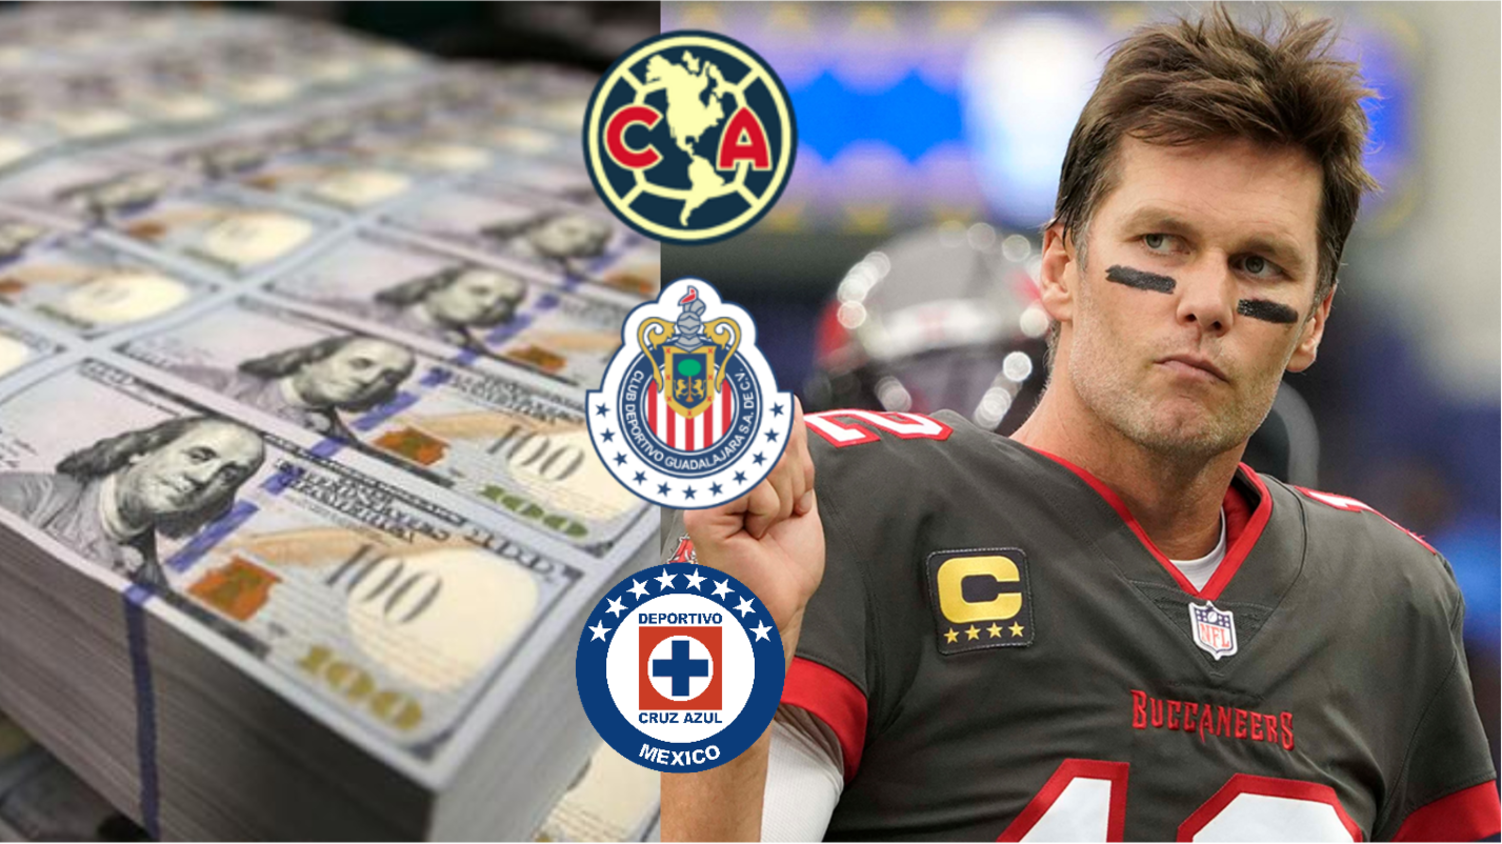 El equipo mexicano que Tom Brady podría comprarse, uno de ellos sí está a la venta